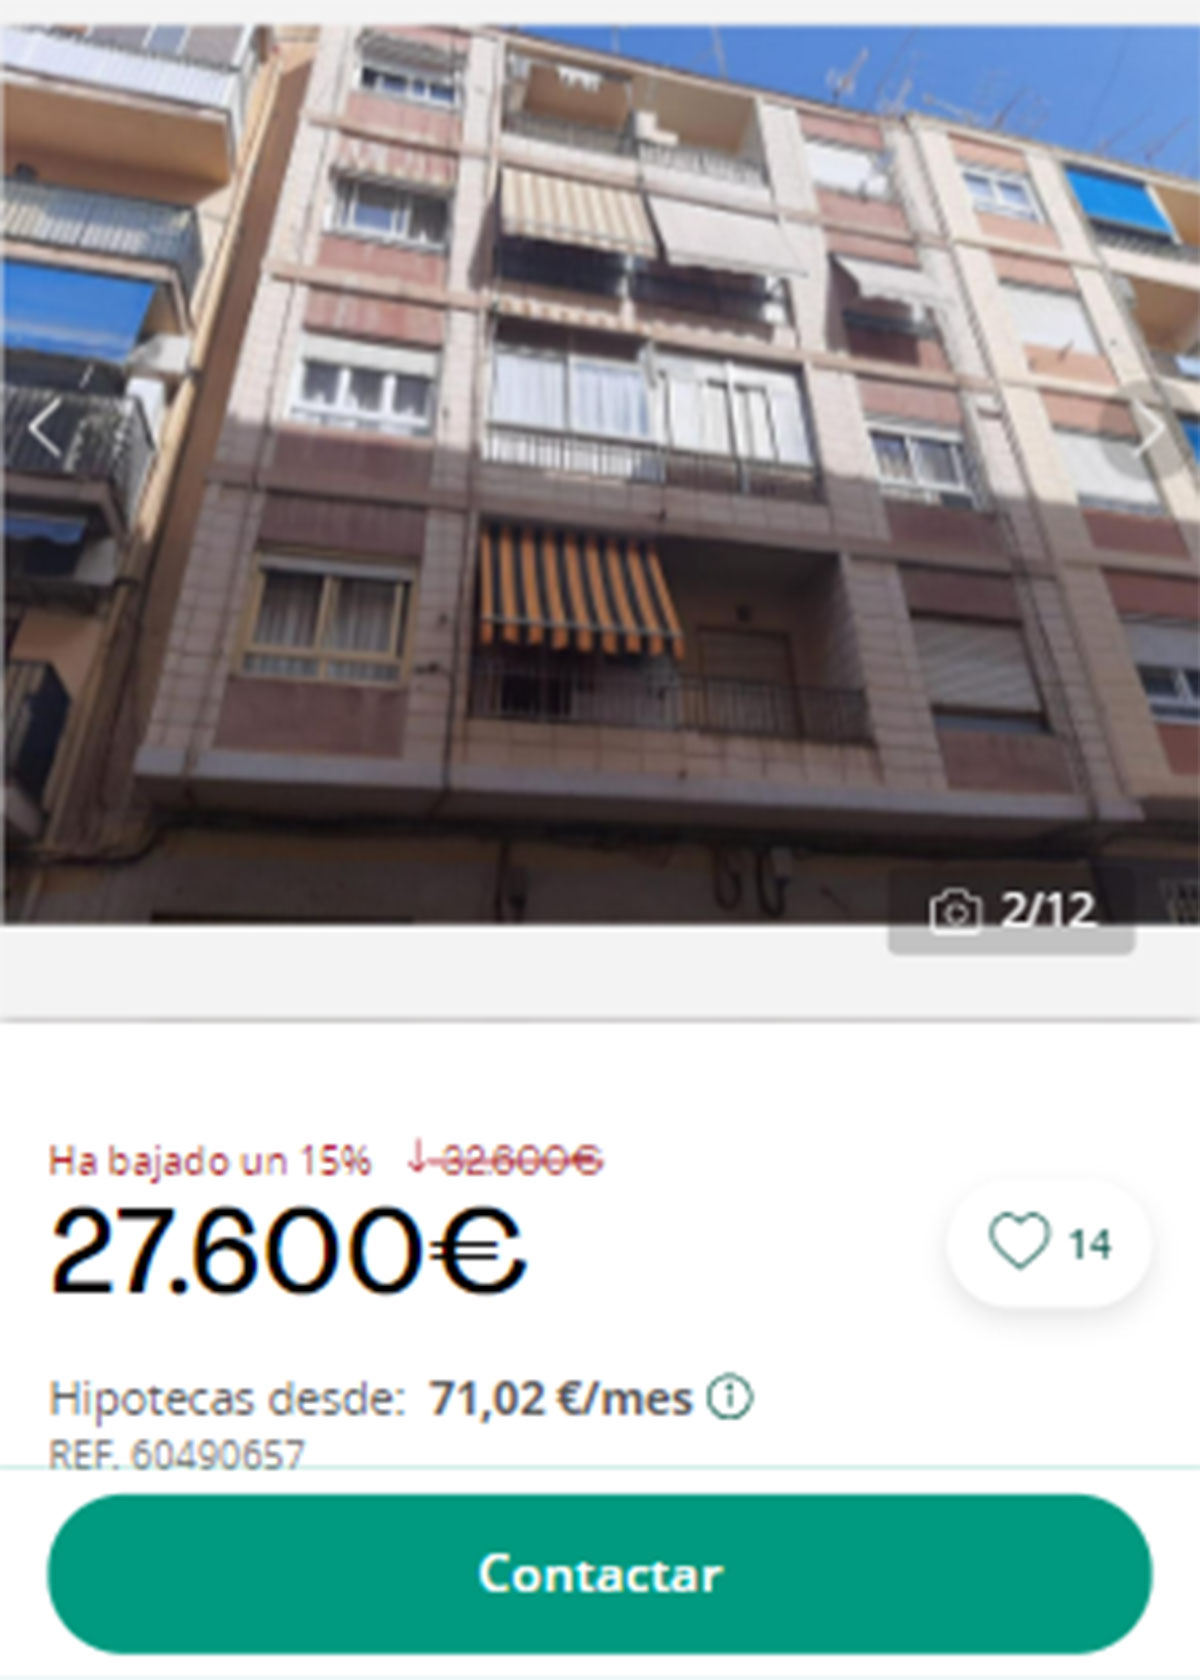 Piso en pueblos de Alicante por 27.600 euros